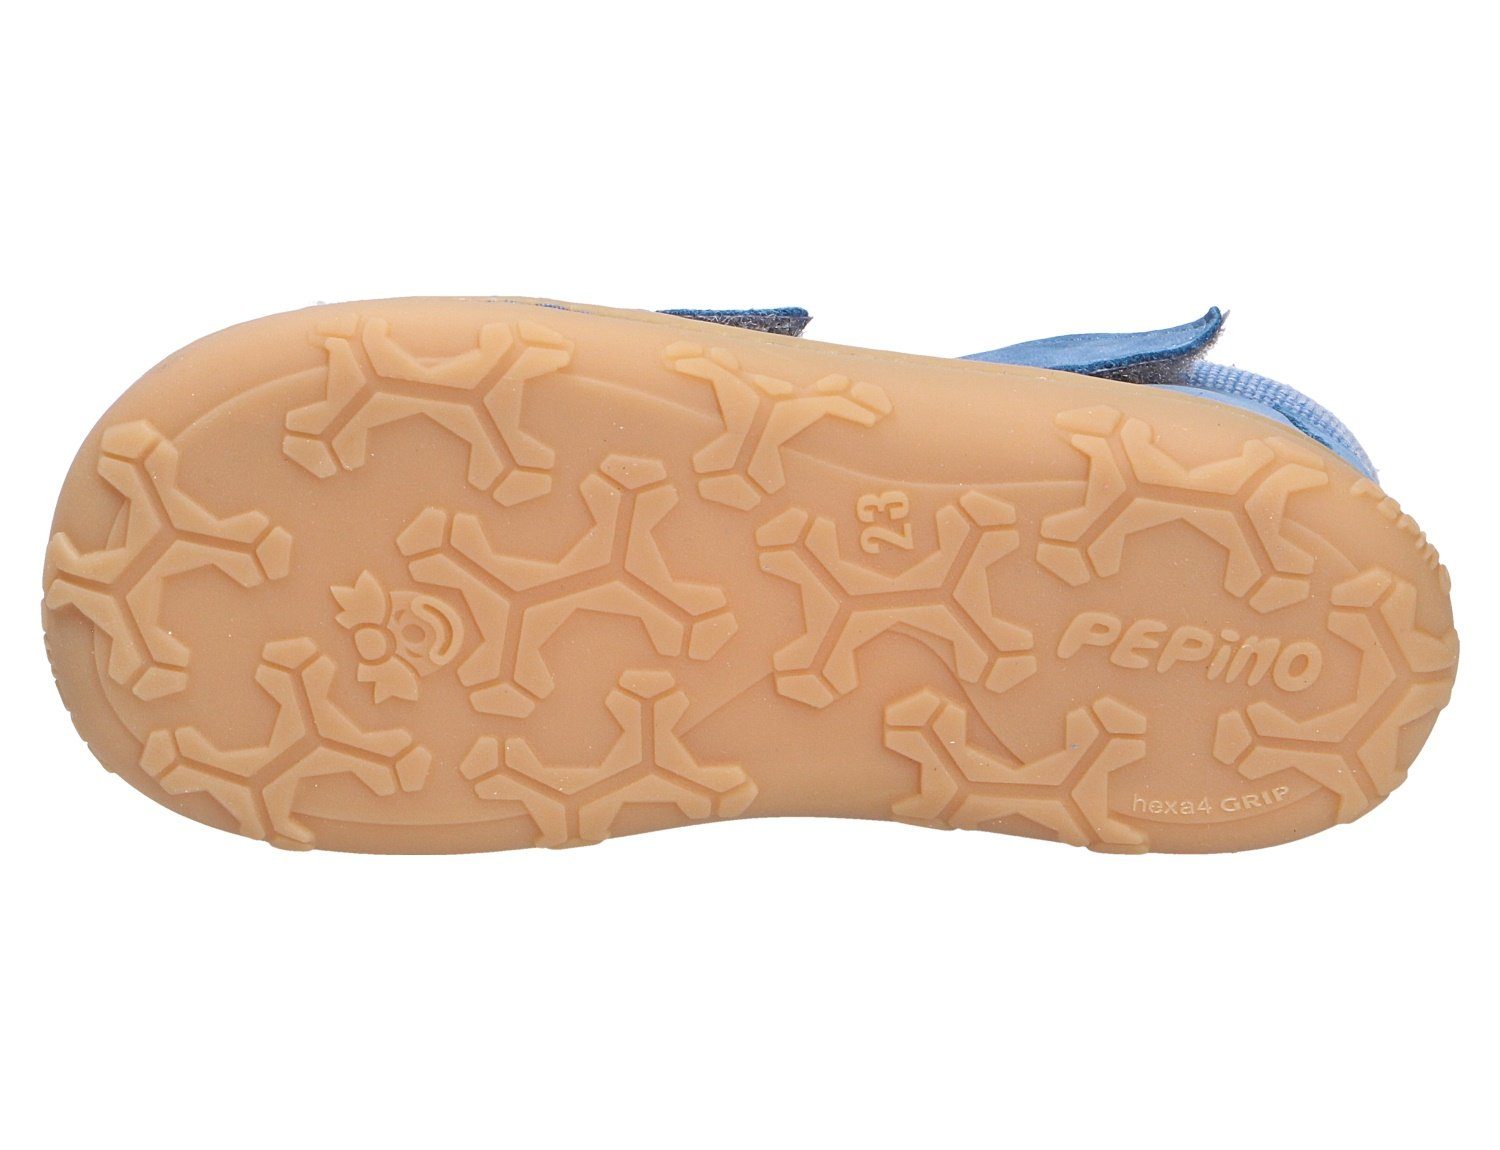 Ricosta Weicher Gehcomfort (140) Sandale adriatic